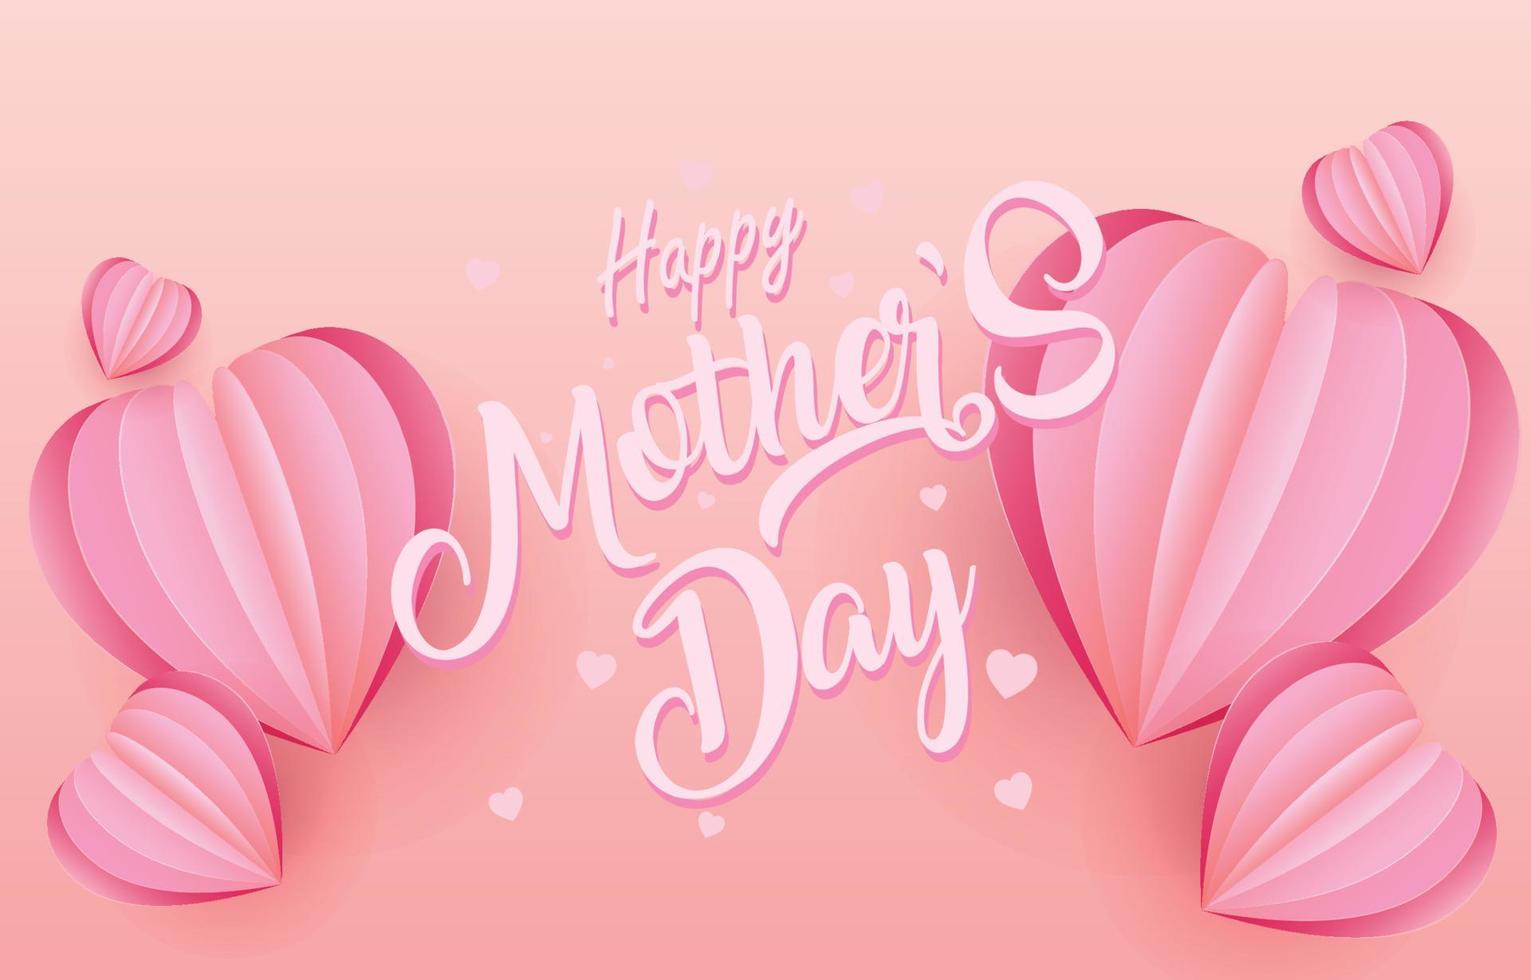 vecteur de bannière de carte de voeux fête des mères avec coeurs volants 3d rose papercut.symbole d'amour et lettres manuscrites sur fond rose.